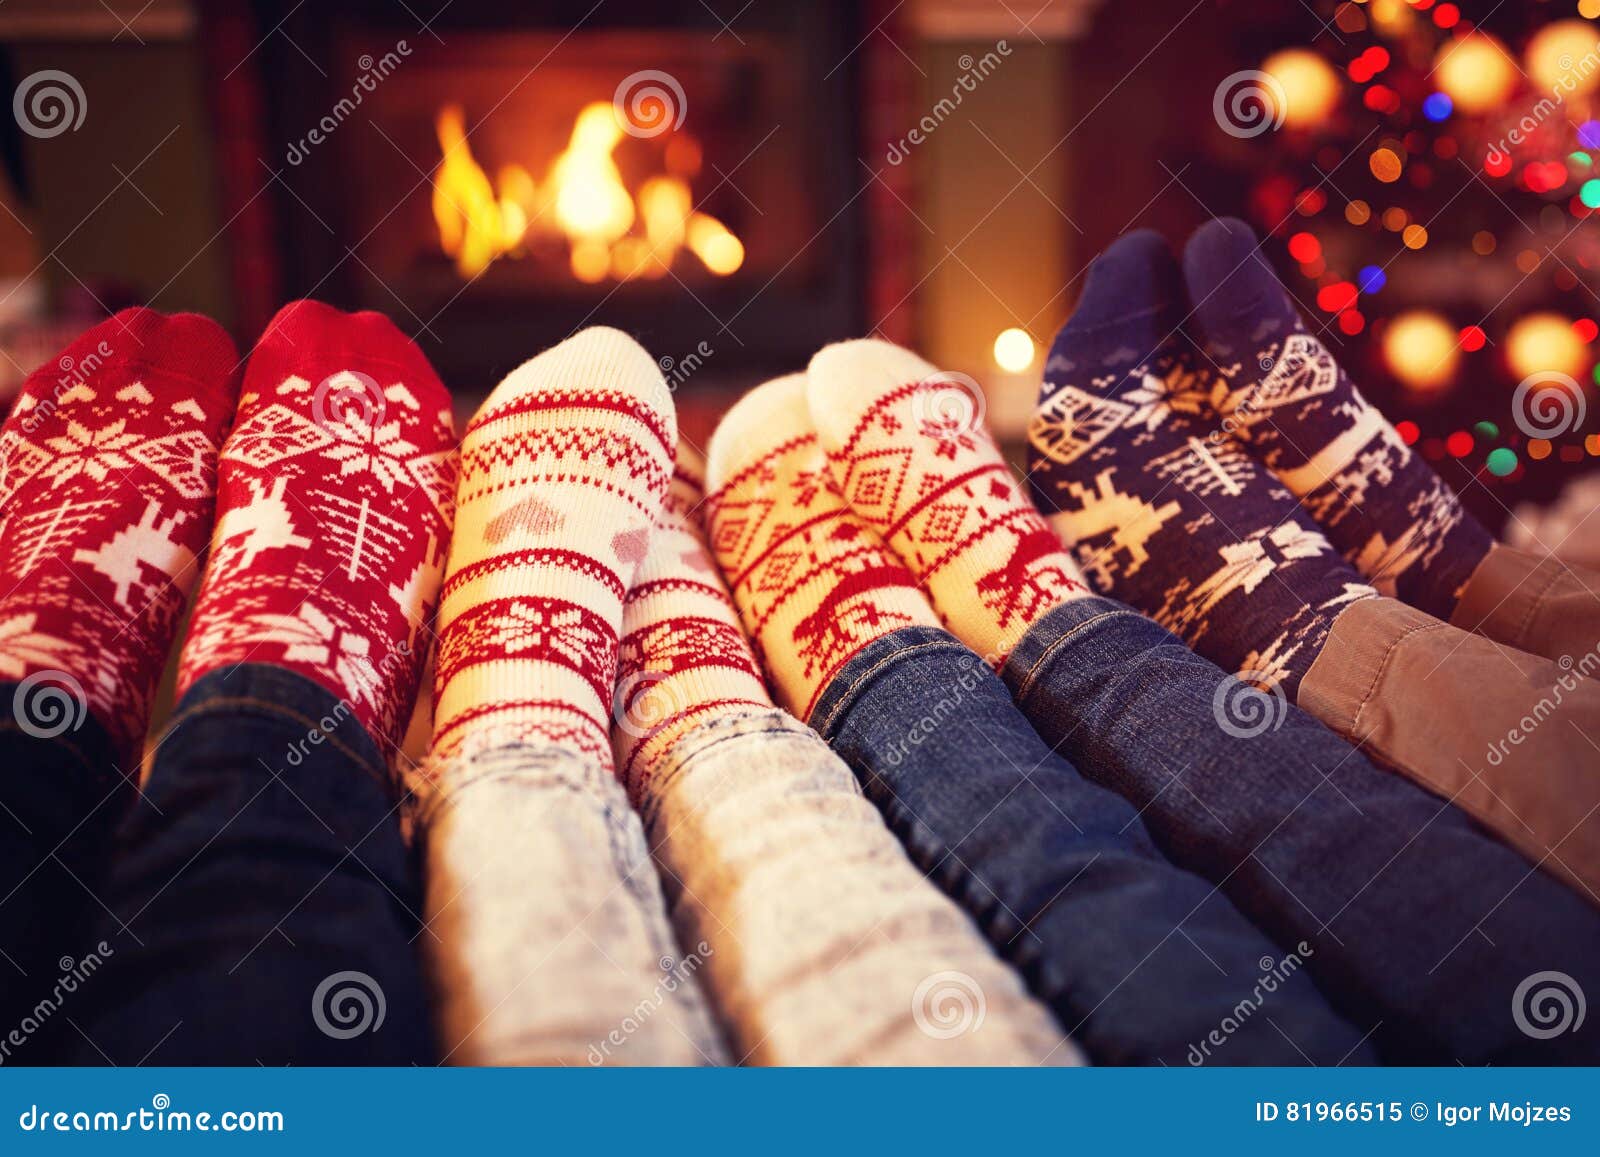 family in socks near fireplace in winter